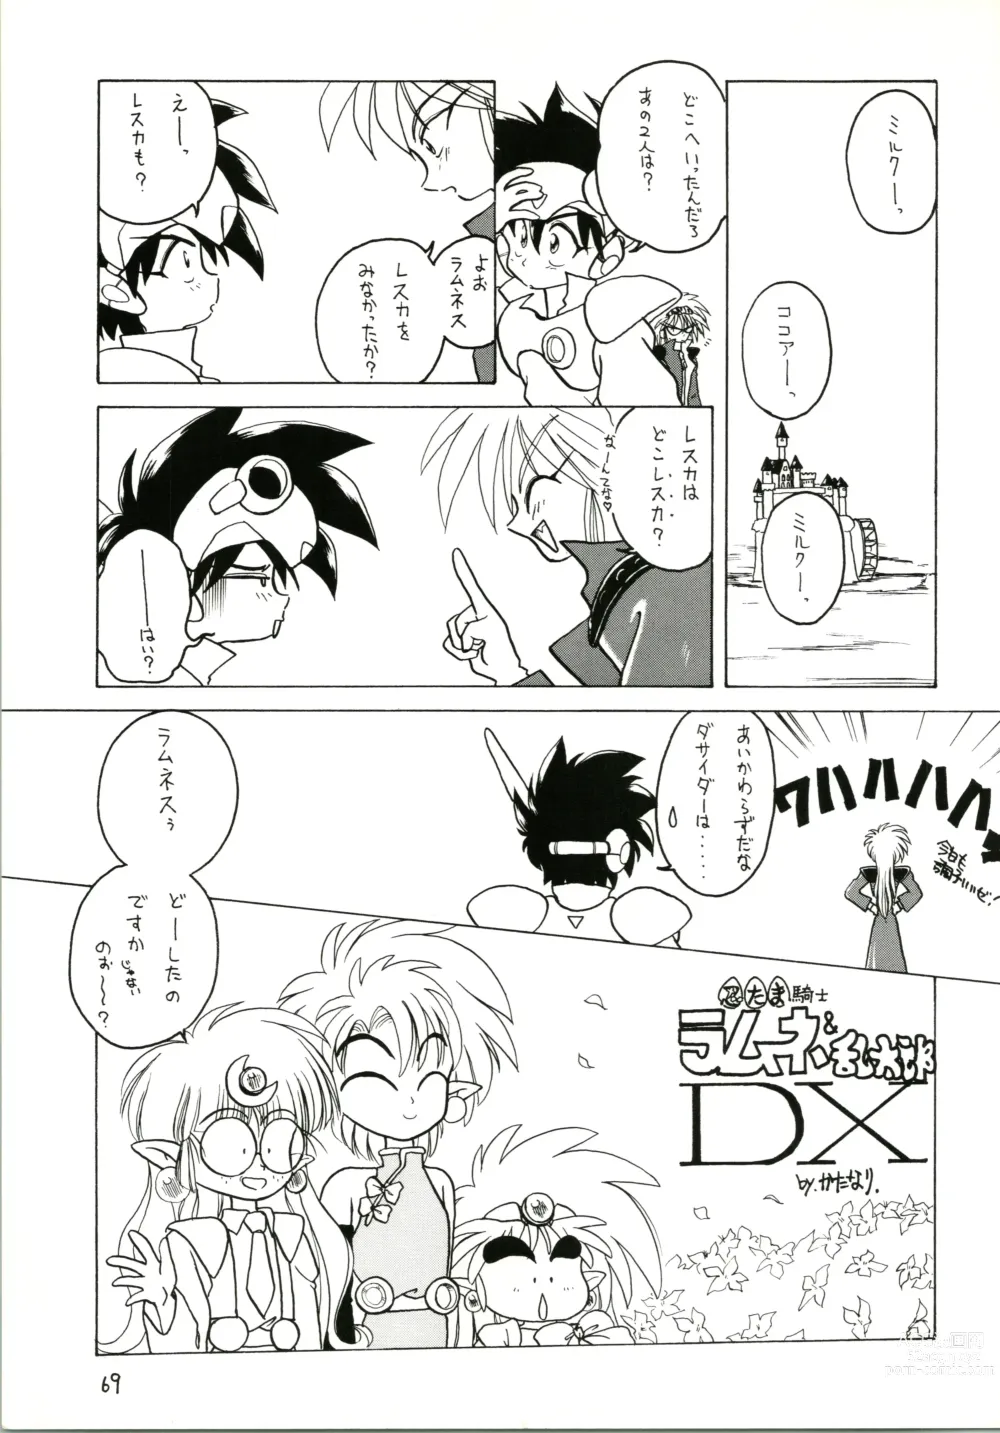 Page 69 of doujinshi Katatoki